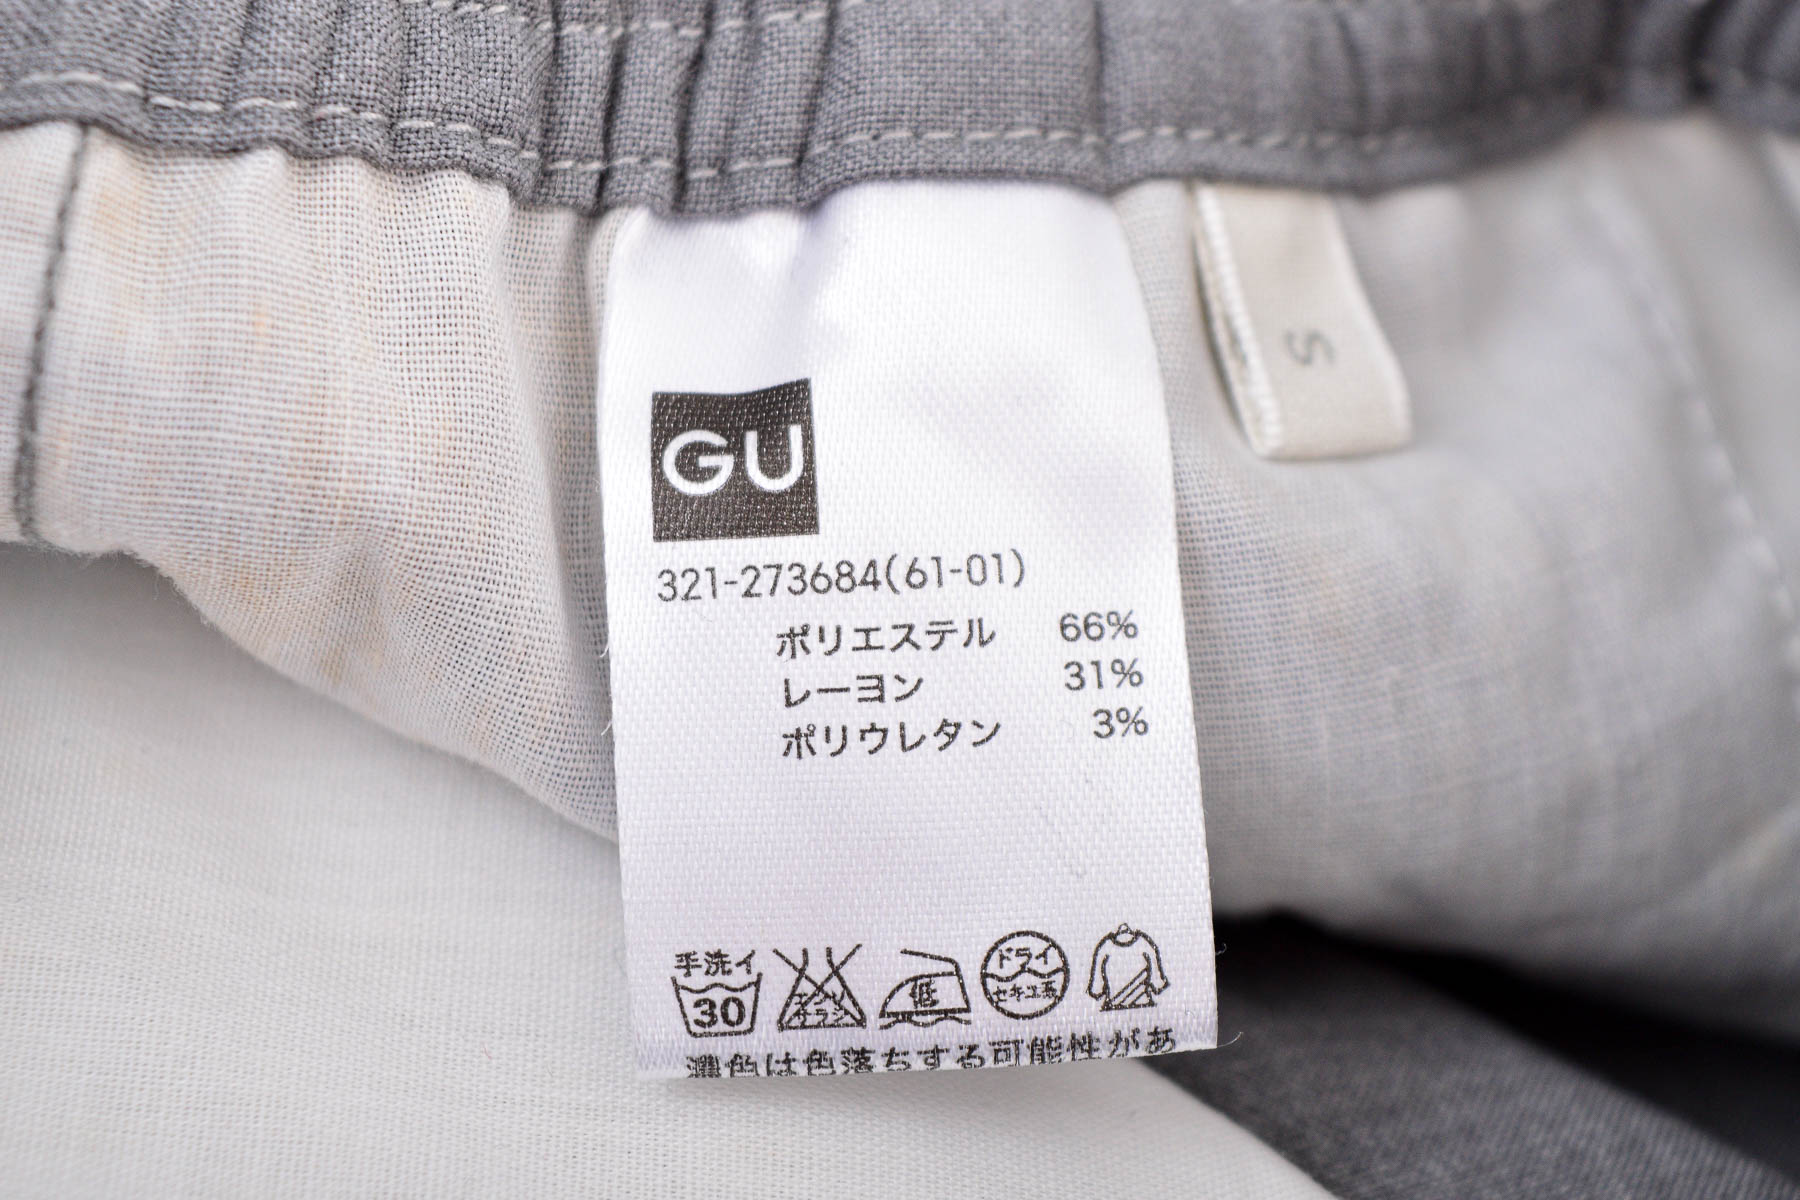 Pantalon pentru bărbați - Gu - 2